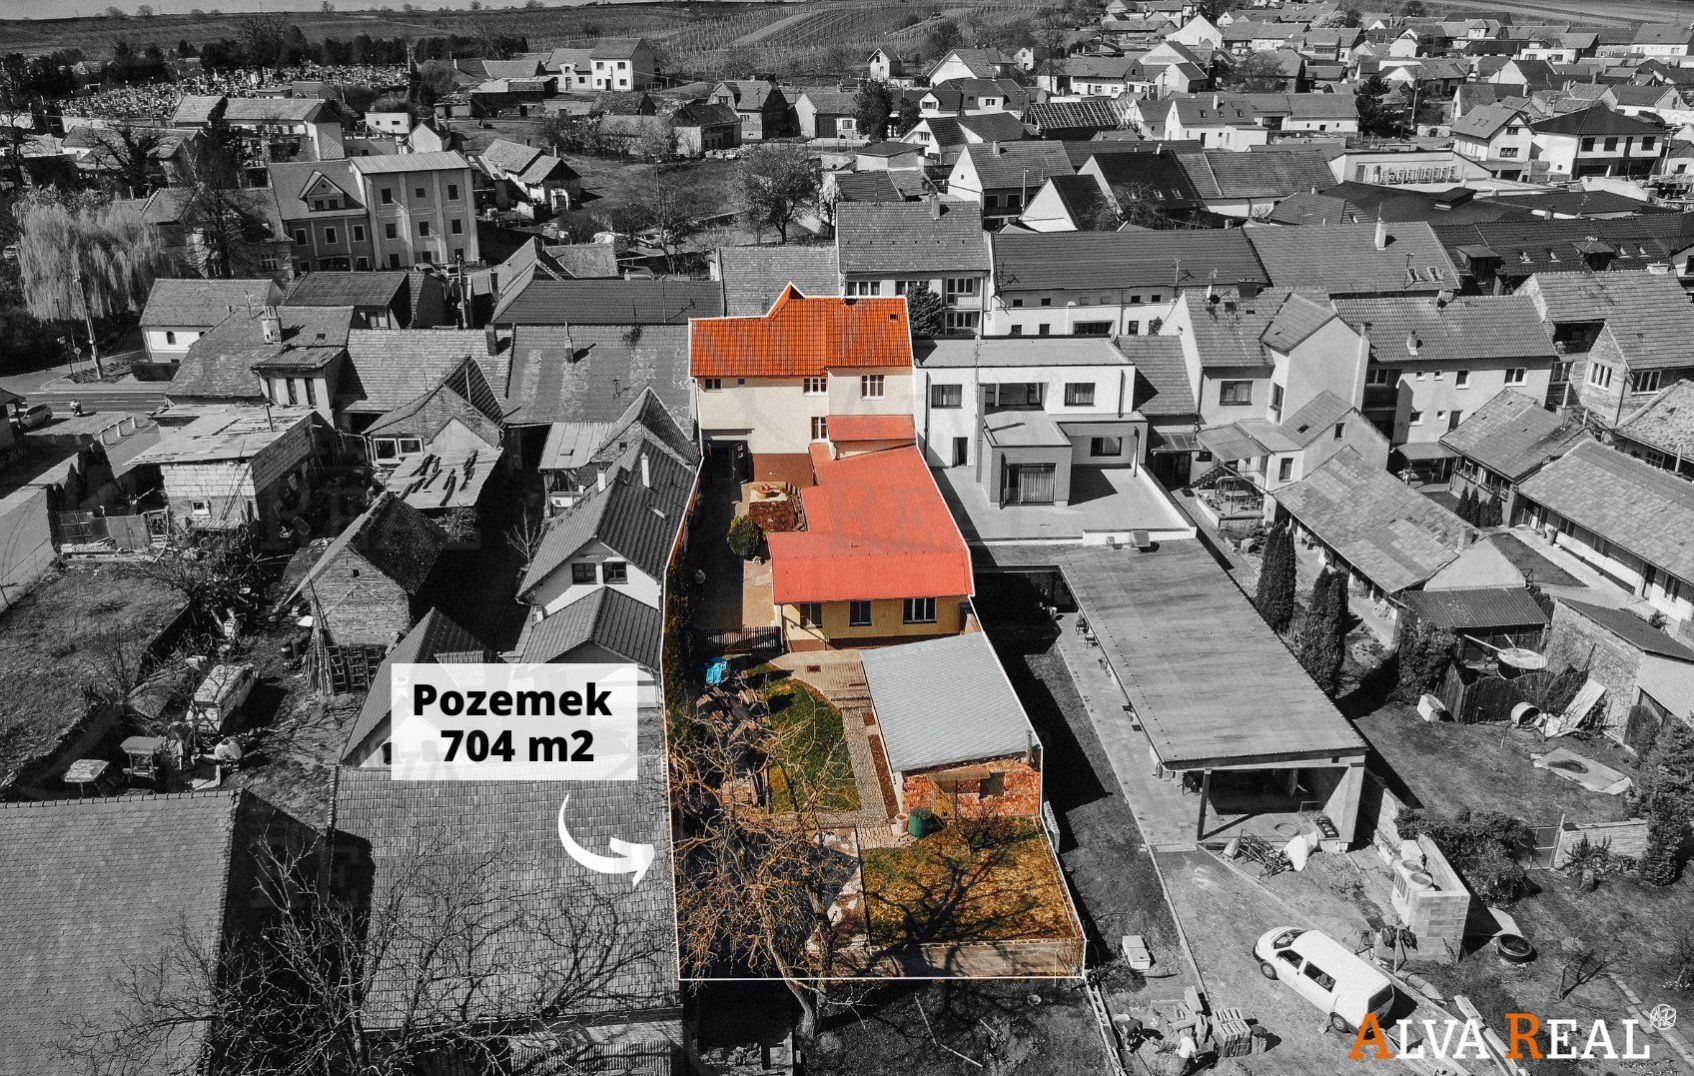 Víceúčelová nemovitost v Čejkovicích, ul. Peckova, bydlení, podnikání, pozemek 704 m2